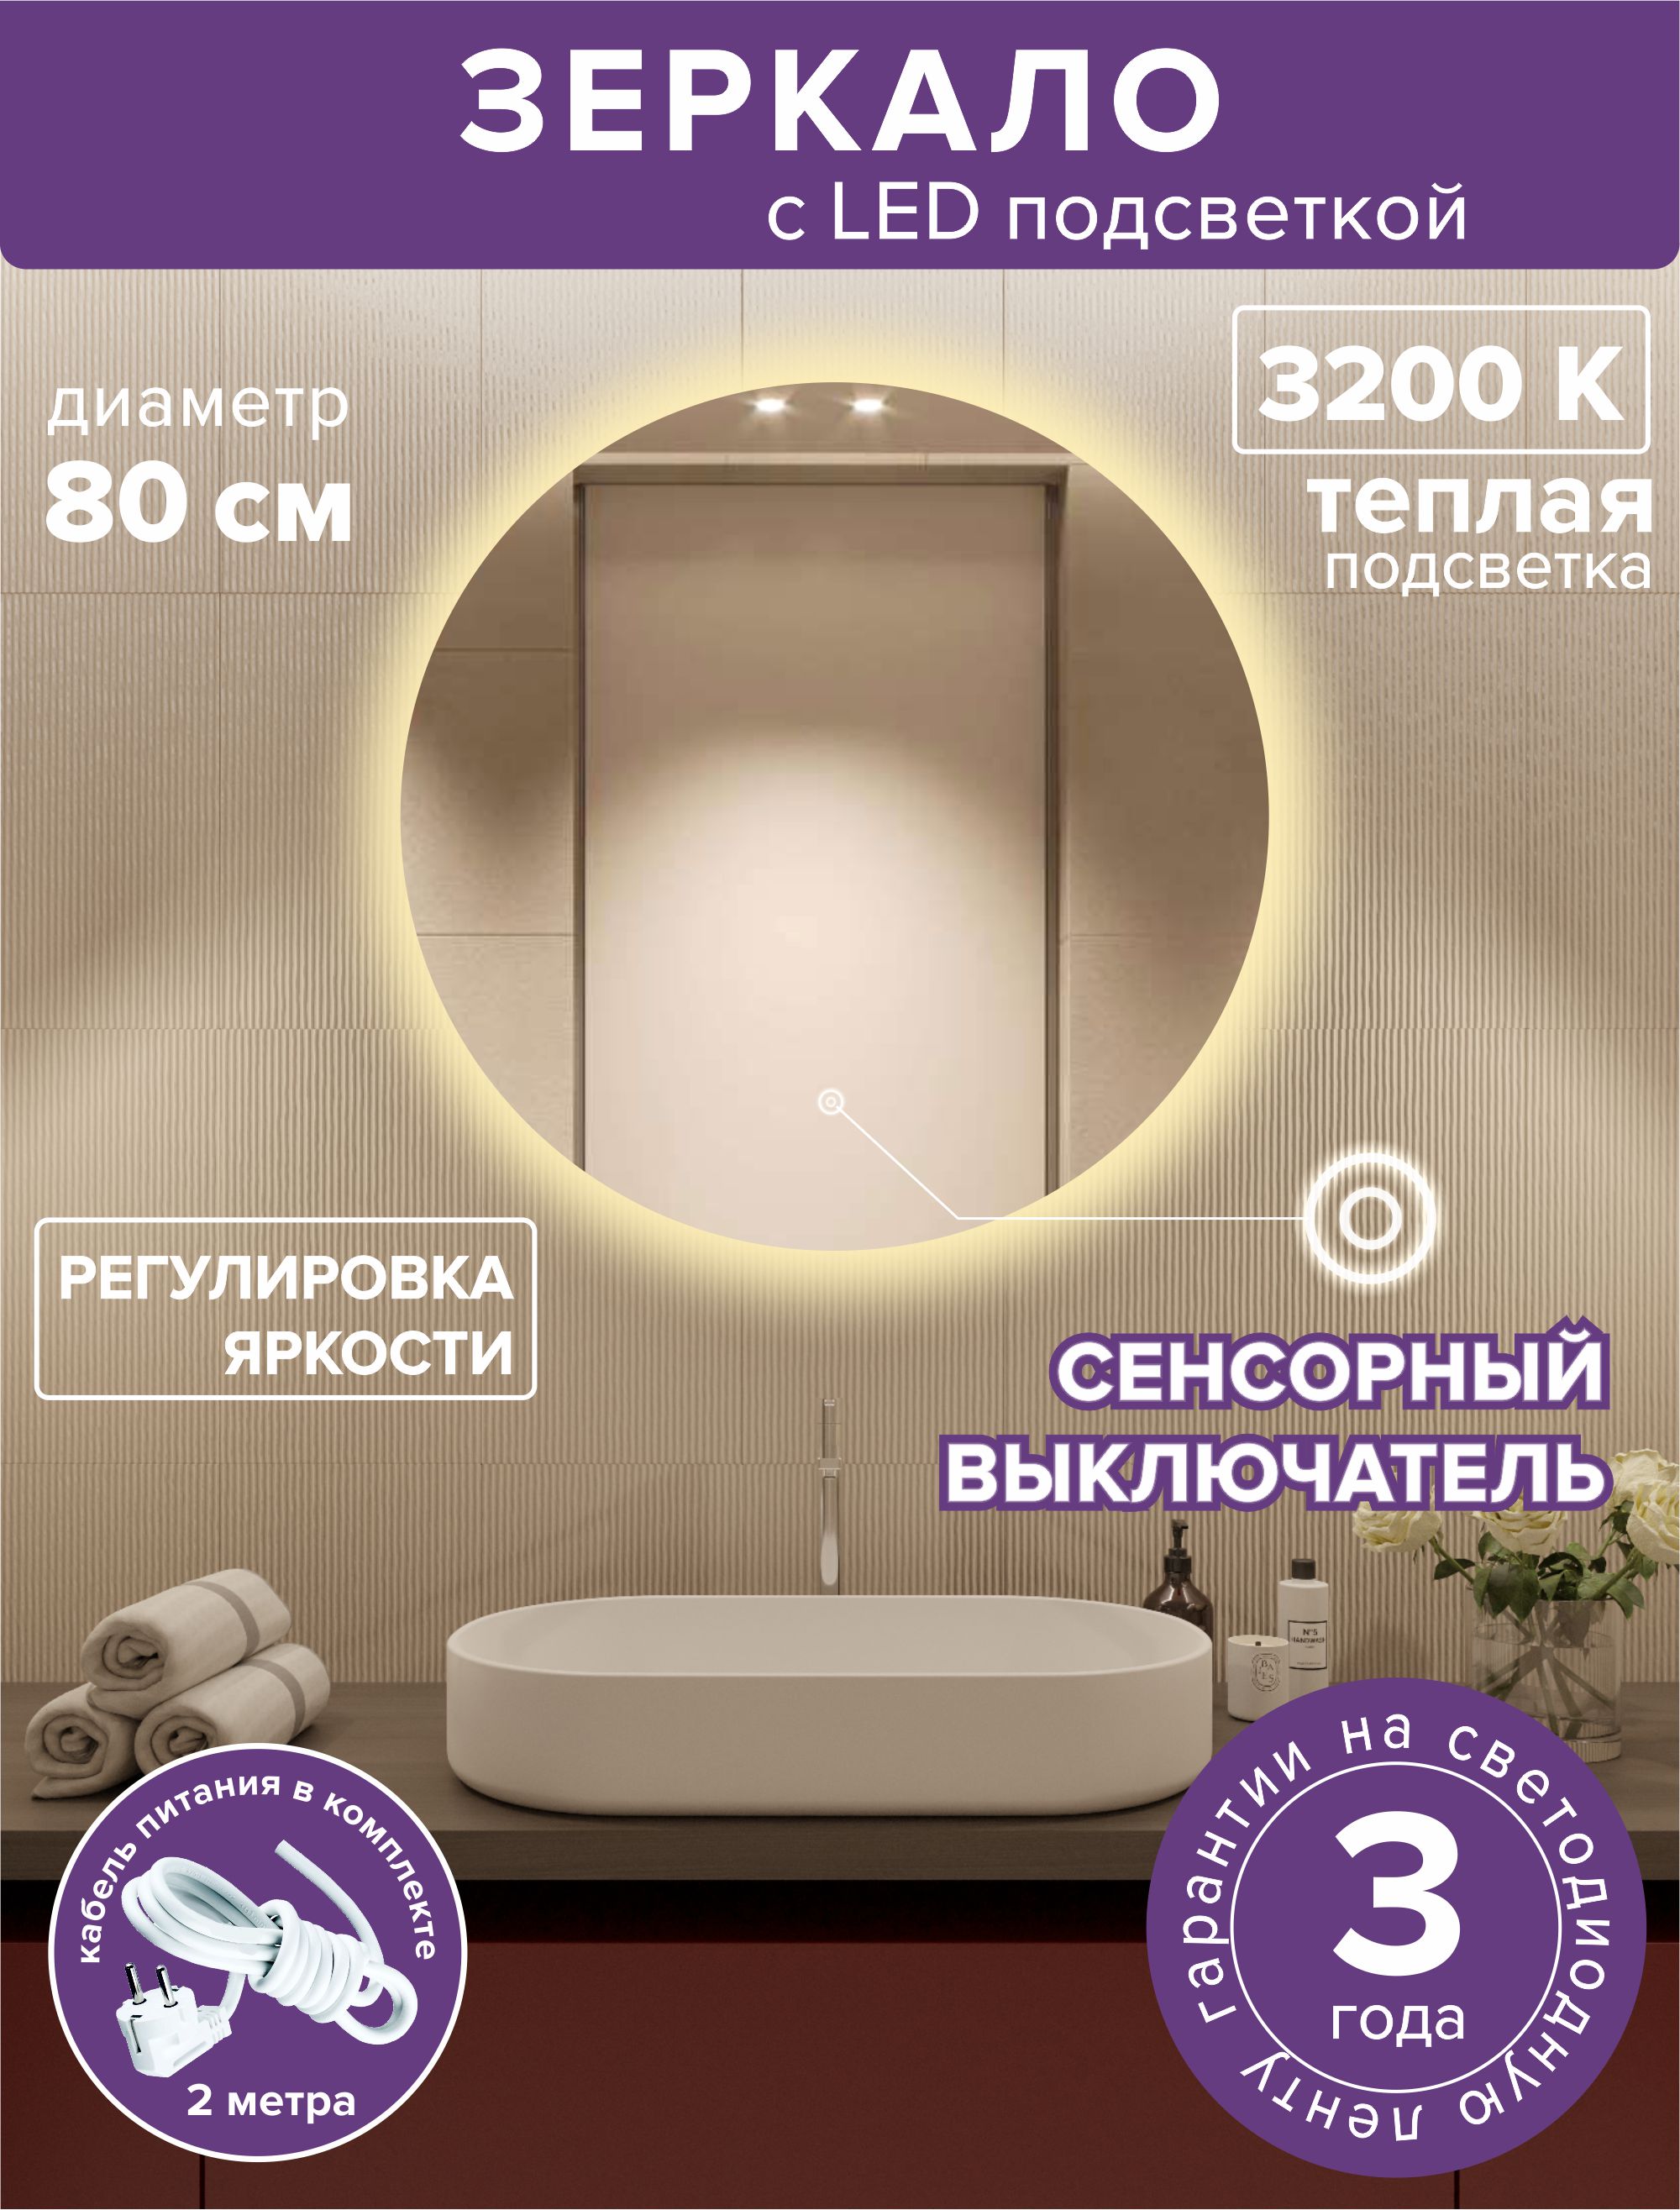 Зеркало для ванной Alfa Mirrors MNa-8Vt круглое, теплая подсветка, 80см led pls 100 10m 240v ww c f ww белая теплая прозр пров белый теплый flash ip 54 соединяемая